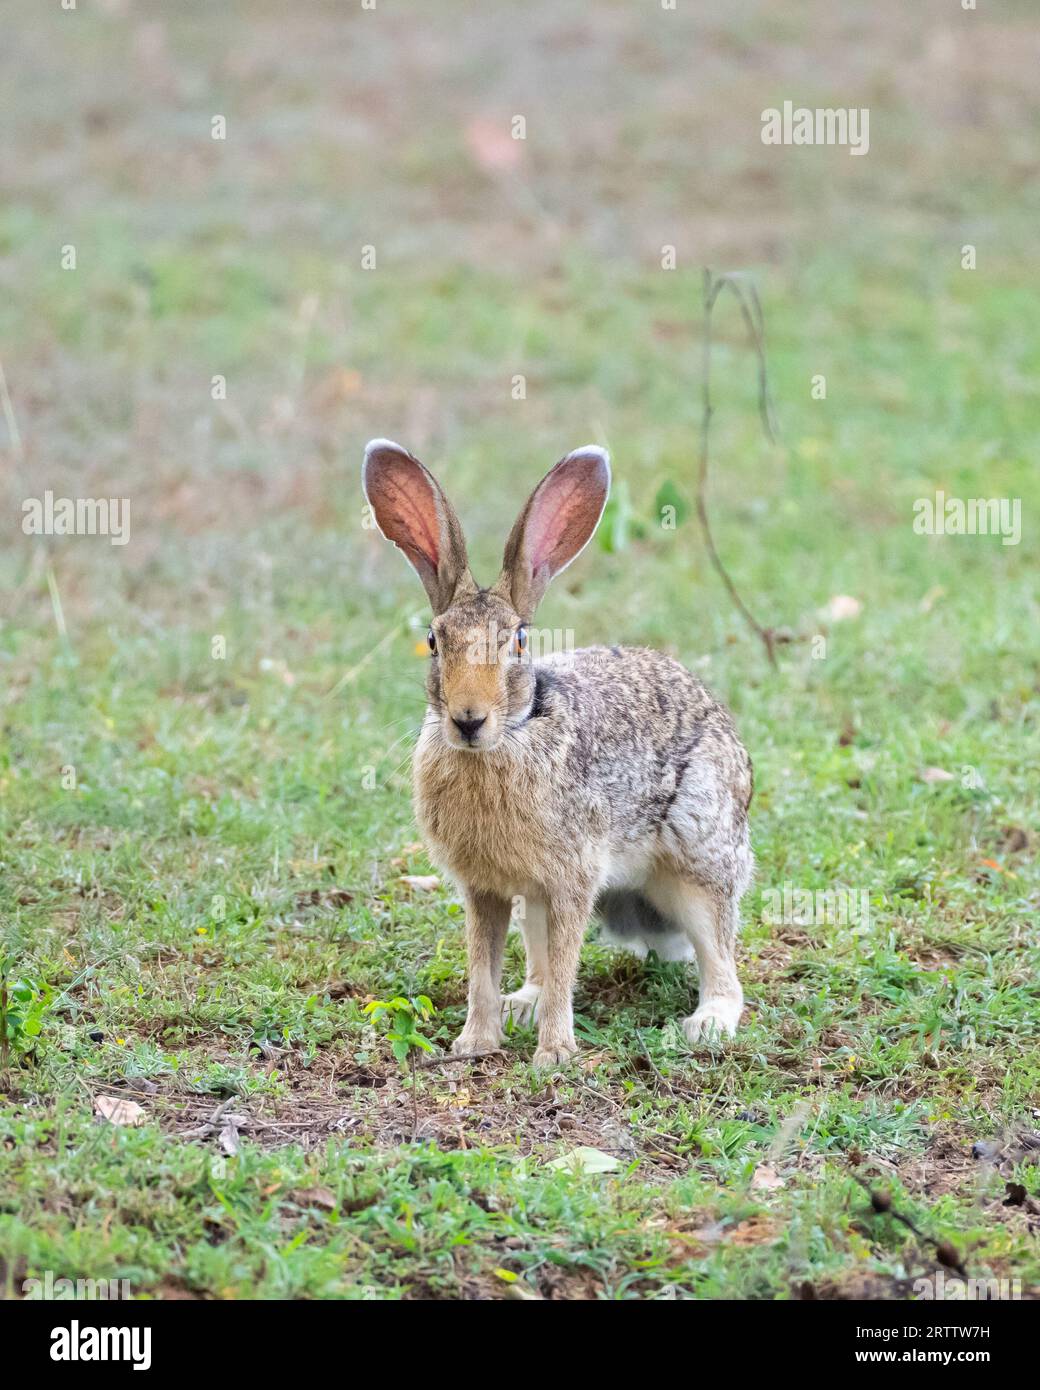 Photographie de profil Indian Hare en gros plan, lièvre vigilant sur le champ d'herbe, longues oreilles vers le haut vue de face. Banque D'Images